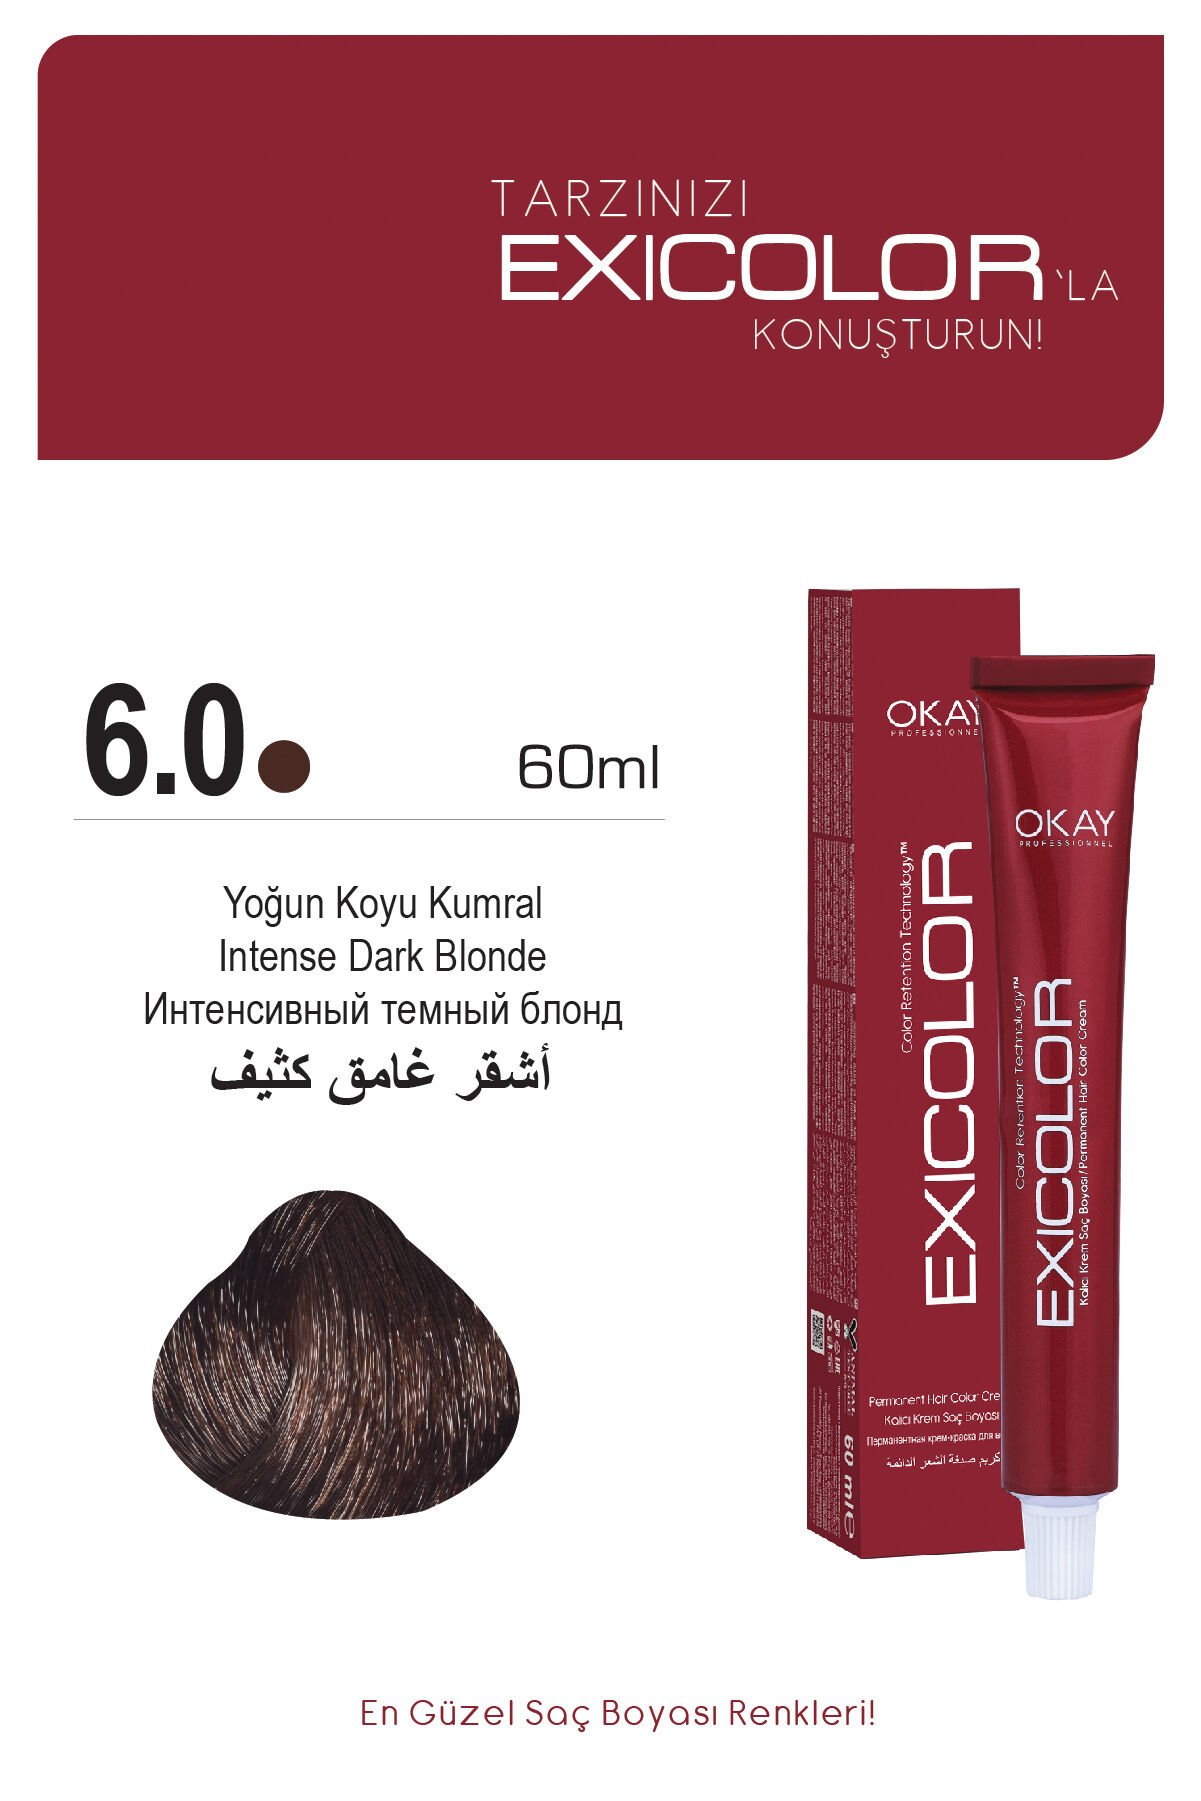 Exicolor 6.0 Yoğun Koyu Kumral - Kalıcı Krem Saç Boyası 60 ml Tüp